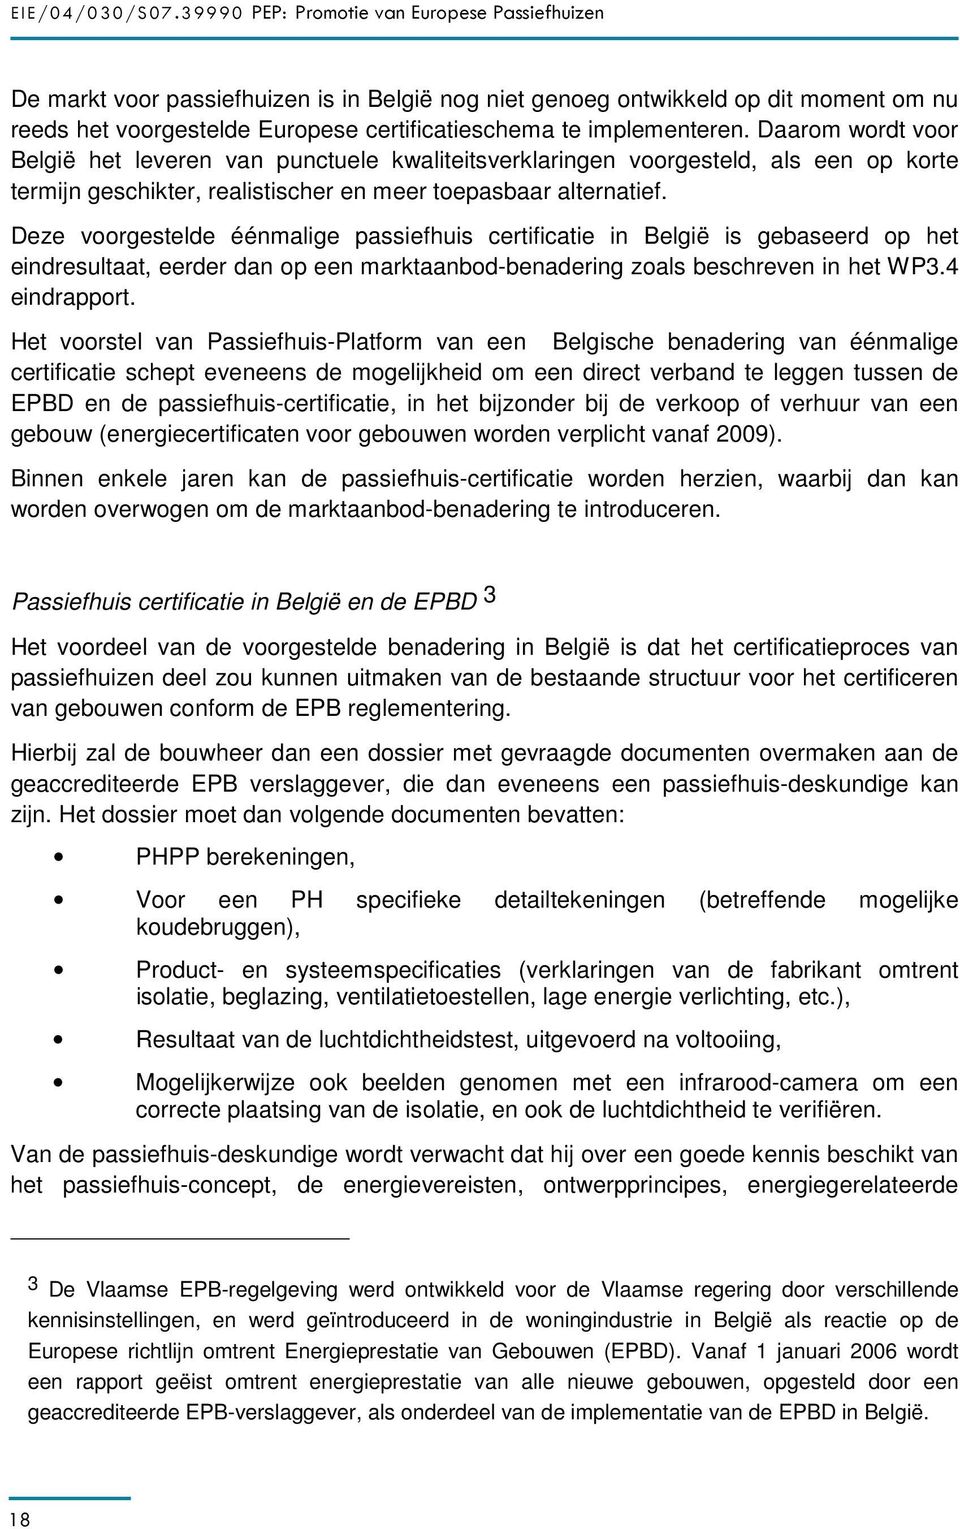 Deze voorgestelde éénmalige passiefhuis certificatie in België is gebaseerd op het eindresultaat, eerder dan op een marktaanbod-benadering zoals beschreven in het WP3.4 eindrapport.